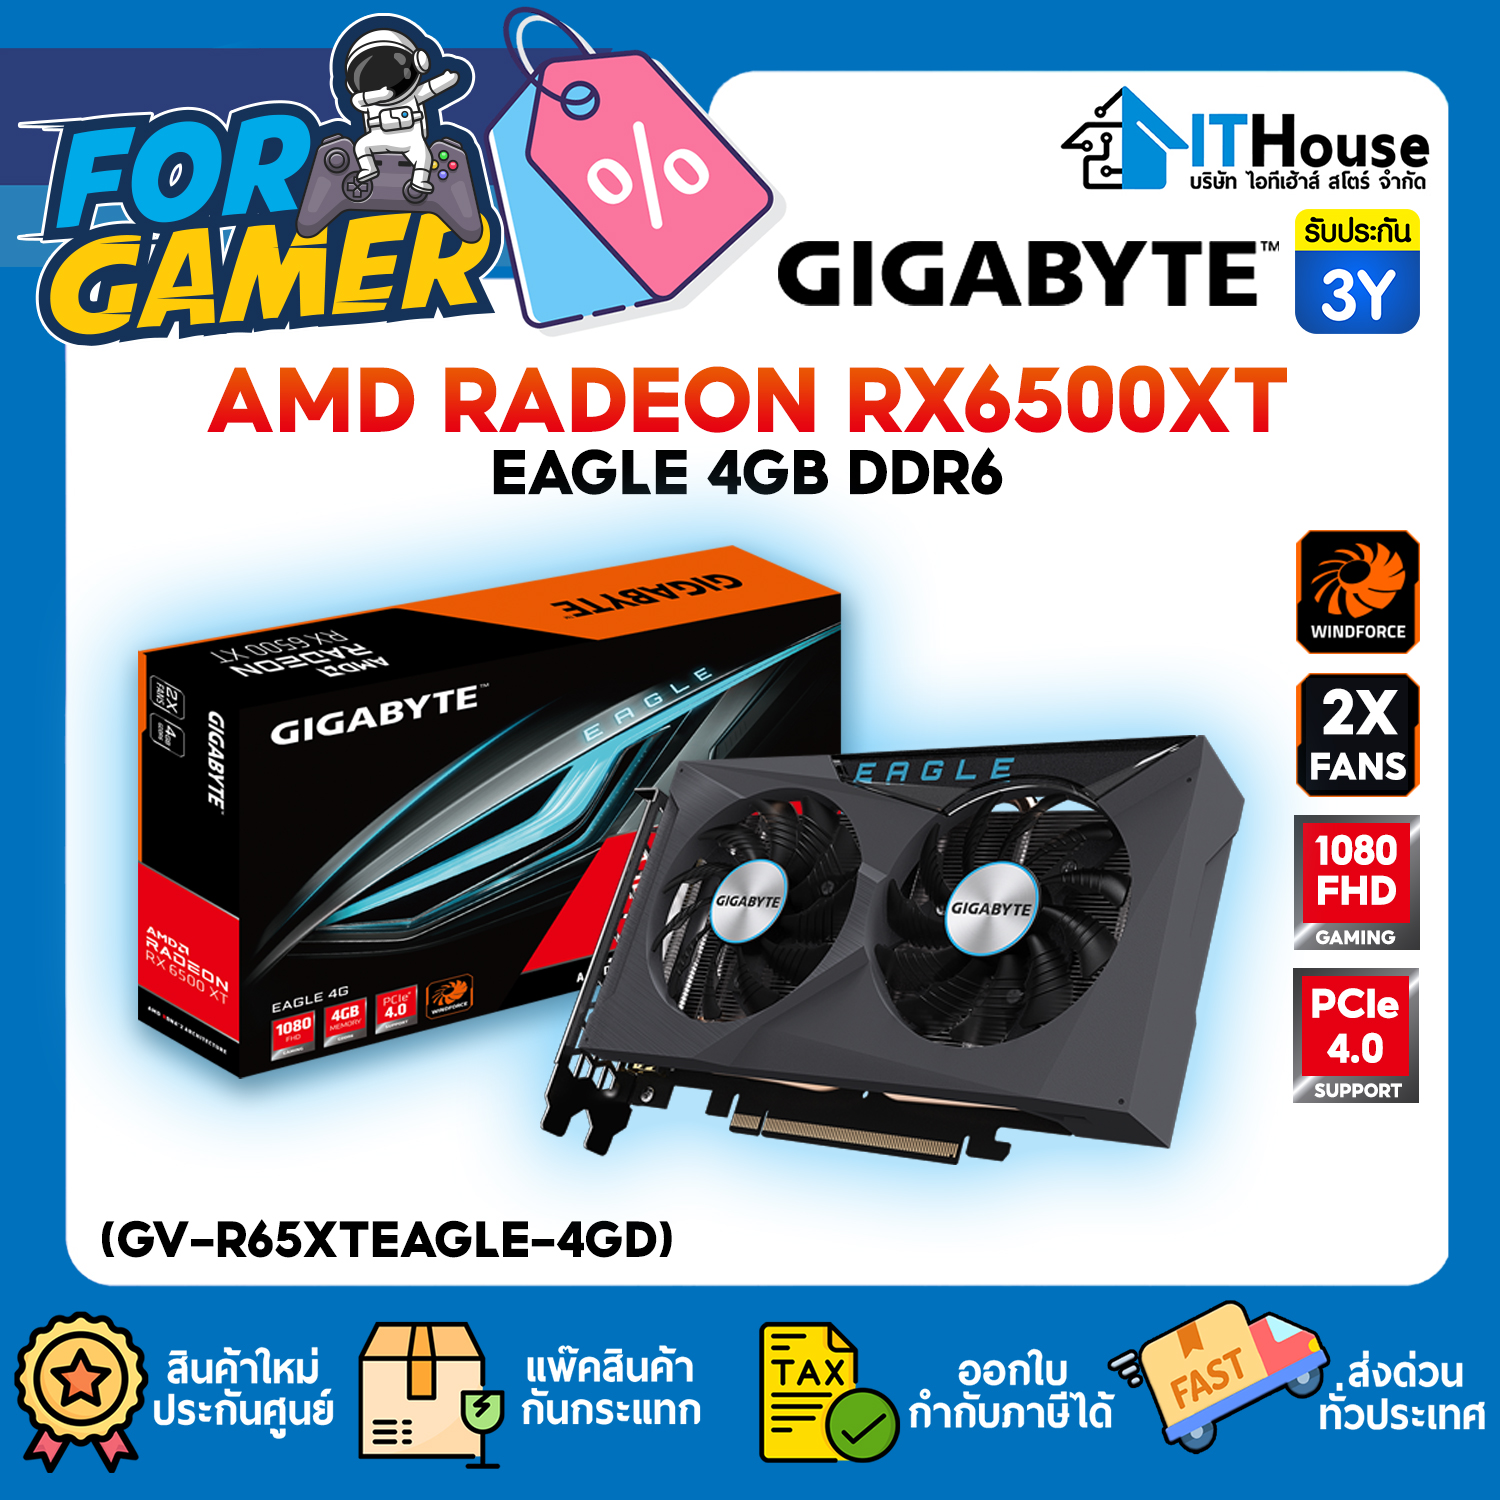 VGA : GIGABYTE AMD RADEON RX6500XT EAGLE 4GB DDR6 (GV-R65XTEAGLE-4GD) #3Y